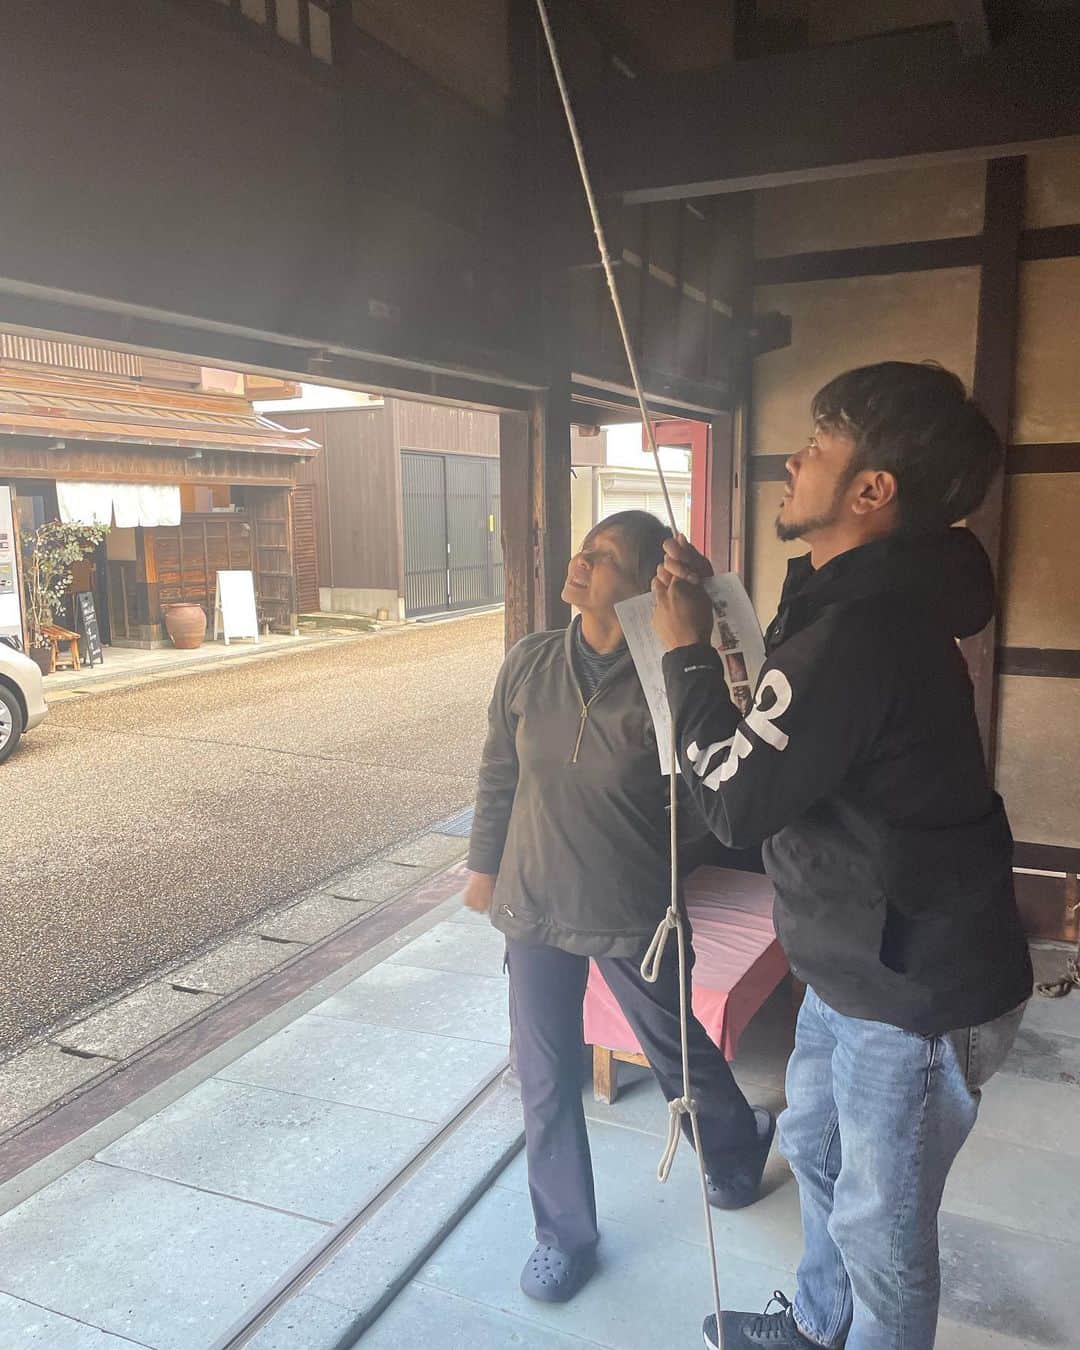 光永亮太さんのインスタグラム写真 - (光永亮太Instagram)「FM COCOLO「MOVE ON SATURDAY」内の「赤い風船 TRAVEL UPDATE」にて今週は先日取材で訪れてきた福井のオススメスポット、オススメグルメをご紹介しました！   大阪から福井へはサンダーバードで2時間弱。   まず取材初日に福井駅について向かったのは、福井駅西口から徒歩で約15分。「ヨーロッパ軒総本店」。 目的は福井が誇るソウルフードのひとつ「ソースカツ丼」を食べにいくこと。ここでいきなり心を鷲掴みにされました。ドイツで料理を学んだ初代が「日本でもウスターソースを広めたい」と、帰国後、1913年に東京・早稲田で創業。神奈川県に移転後、関東大震災で被災。故郷の福井に戻って根をはったというお店。 平日にも関わらず店内は満席。いかに地元の方々に愛されているかがわかります。ここでいただいたのは名物「ソースカツ丼セット」¥1,300-。カツが3枚乗ったソースカツ丼とミニサラダ、お味噌汁付き。 カツの厚さは8ミリと決まっているそうです。それは「口の中で噛んだときに肉汁とソースがうまく引き合うサイズ」だからだそうです。先代から受け継いでいるウスターソースは秘伝の味。 運ばれてきて早速いただくと、きめ細かなパン粉に包まれたカツがまずとにかく柔らかい。それを纏う少し酸味の効いたウスターソース。ソースカツと聞くと油っぽくて重たいというイメージでしたが、180°そのイメージを覆されました。全く油臭くなく、それでいて歯触りもよく、旨みがあるのにさっぱりしているのです。 そして付け合わせのミニサラダも絶品。自家製のマヨネーズがクリーミーで濃厚なのですが、それでいてさっぱりしているんです。黄金のコンビネーション。いやはや、早速福井の底力を見せつけられました。地元の方々からも愛される「ヨーロッパ軒総本店」。家の近くに欲しい！！   その足で向かったのは三国湊。江戸時代から明治時代にかけて「北前船」で繁栄を極めた「三国湊」の歴史に触れることができる場所。まずは三国湊にあるミニ資料館「マチノクラ」を最初に訪れることをお勧めします。ここでは三国湊の歴史を15分ほどのビデオで上映してくれるのですが、ここでビデオを見ると理解が深まる上に、かつての三国湊への想いを馳せてこのあとの散策を楽しむことができるので、立ち寄りはマストです。ここで¥200を払っておくと、「マチノクラ」から目と鼻の先にある「旧岸名家」の住宅の内部を見学することができます。   岸名家は北前船貿易において材木商を営んでいた三国湊を代表する商家のひとつ。その建物が今でも残っていて、建物内を見学することができます。こちらにはガイドさんがいらっしゃって、歴史や建物の構造について丁寧に説明をしてくれます。三国湊が繁栄していた時代の商人の暮らしぶりが手に取るようにわかります。台所、五右衛門風呂、トイレはもちろんのこと、北前船に乗せるための金庫の役割も果たした精巧な船箪笥も実際に見ることができます。これがなかなか興味深くて面白い。実際に靴を脱いで建物の中に上がることもできるので、ぜひ立ち寄ってみてください。 他にも三国湊の豪商だった森田家が営んでいた「旧森田銀行本店」や明治12年に建てられた五層八角の小学校など見どころ満載。三国湊に息づくロマンを感じながらの散策をお勧めします。そしてお土産には是非「にしさか」の名物「酒まんじゅう」を！北前船の船乗りたちから製法を学んだという伝統の饅頭。大きさも手のひらサイズで大きめ。餡子が入っているシンプルなお饅頭ですが、素朴な味でとっても美味しかったです！   三国湊を後にして向かったのは東尋坊！国の天然記念物です。サスペンスドラマの終盤に海沿いの断崖絶壁で犯人が刑事に追い詰められて自供するシーン、なんとなく思い浮かぶ方も多いのではないでしょうか？東尋坊はまさにそんな場所！打ち寄せる荒波、そして海と空とのコントラストが大迫力！断崖絶壁に立つと足がすくみます。この日はちょうど空から天使の梯子がかかっていたりと、絶景を堪能することもできました。福井を訪れたら東尋坊を訪れるのもマストだと思います！ 自然が織りなす美を五感で楽しんでください！   少し体が冷えたなぁと思ったら、その東尋坊にある「IWABA CAFÉ」でひと休みして暖をとりましょう！ こちら、美味しいコーヒーをいただきながら窓からバッチリ東尋坊をじっくりと眺めることもできます。   これから秋冬の「福井」満喫していただきたい！！   赤い風船 関西版で福井旅はいかがでしょうか？   来週は福井取材2日目の模様をお伝えします！どうぞお楽しみに！！   #にこTA #日本旅行 #赤い風船 #FMCOCOLO765 #福井旅 #ヨーロッパ軒総本店 #ソースカツ丼 #三国湊 #東尋坊 #にしさか #酒まんじゅう #旧岸名家  @west_akafu」11月18日 11時35分 - mitsunagaryota